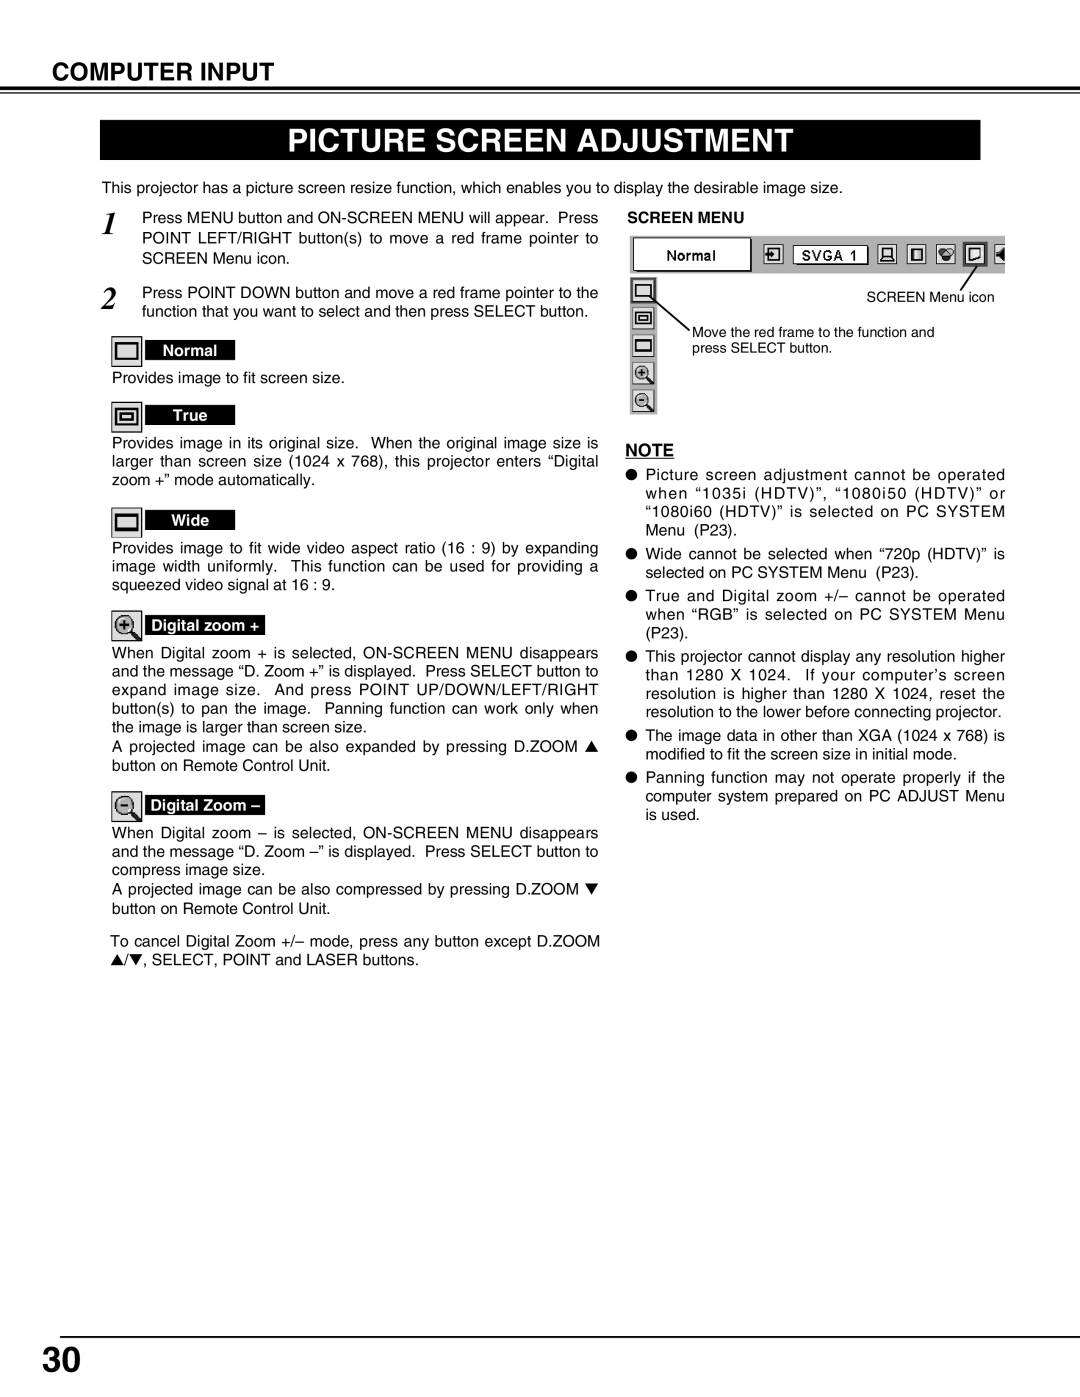 Sanyo PLC-XT10A owner manual Picture Screen Adjustment, Screen Menu 